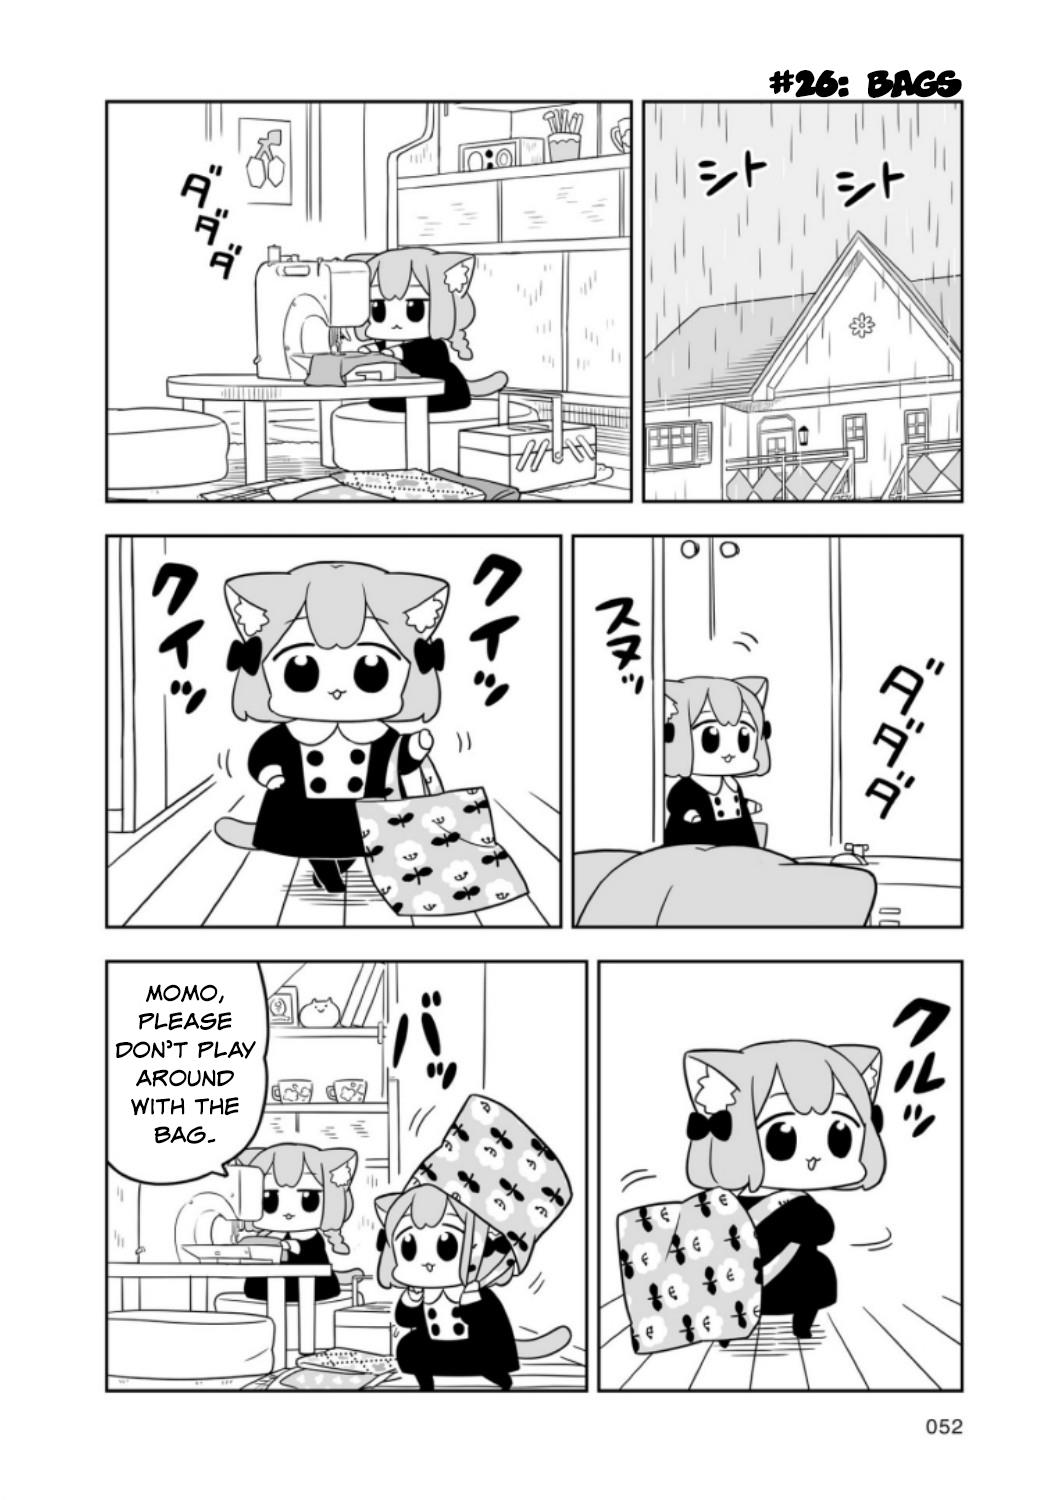 Ume To Momo No Futsuu No Kurashi Vol.1 Chapter 5: Day 5 - Picture 2